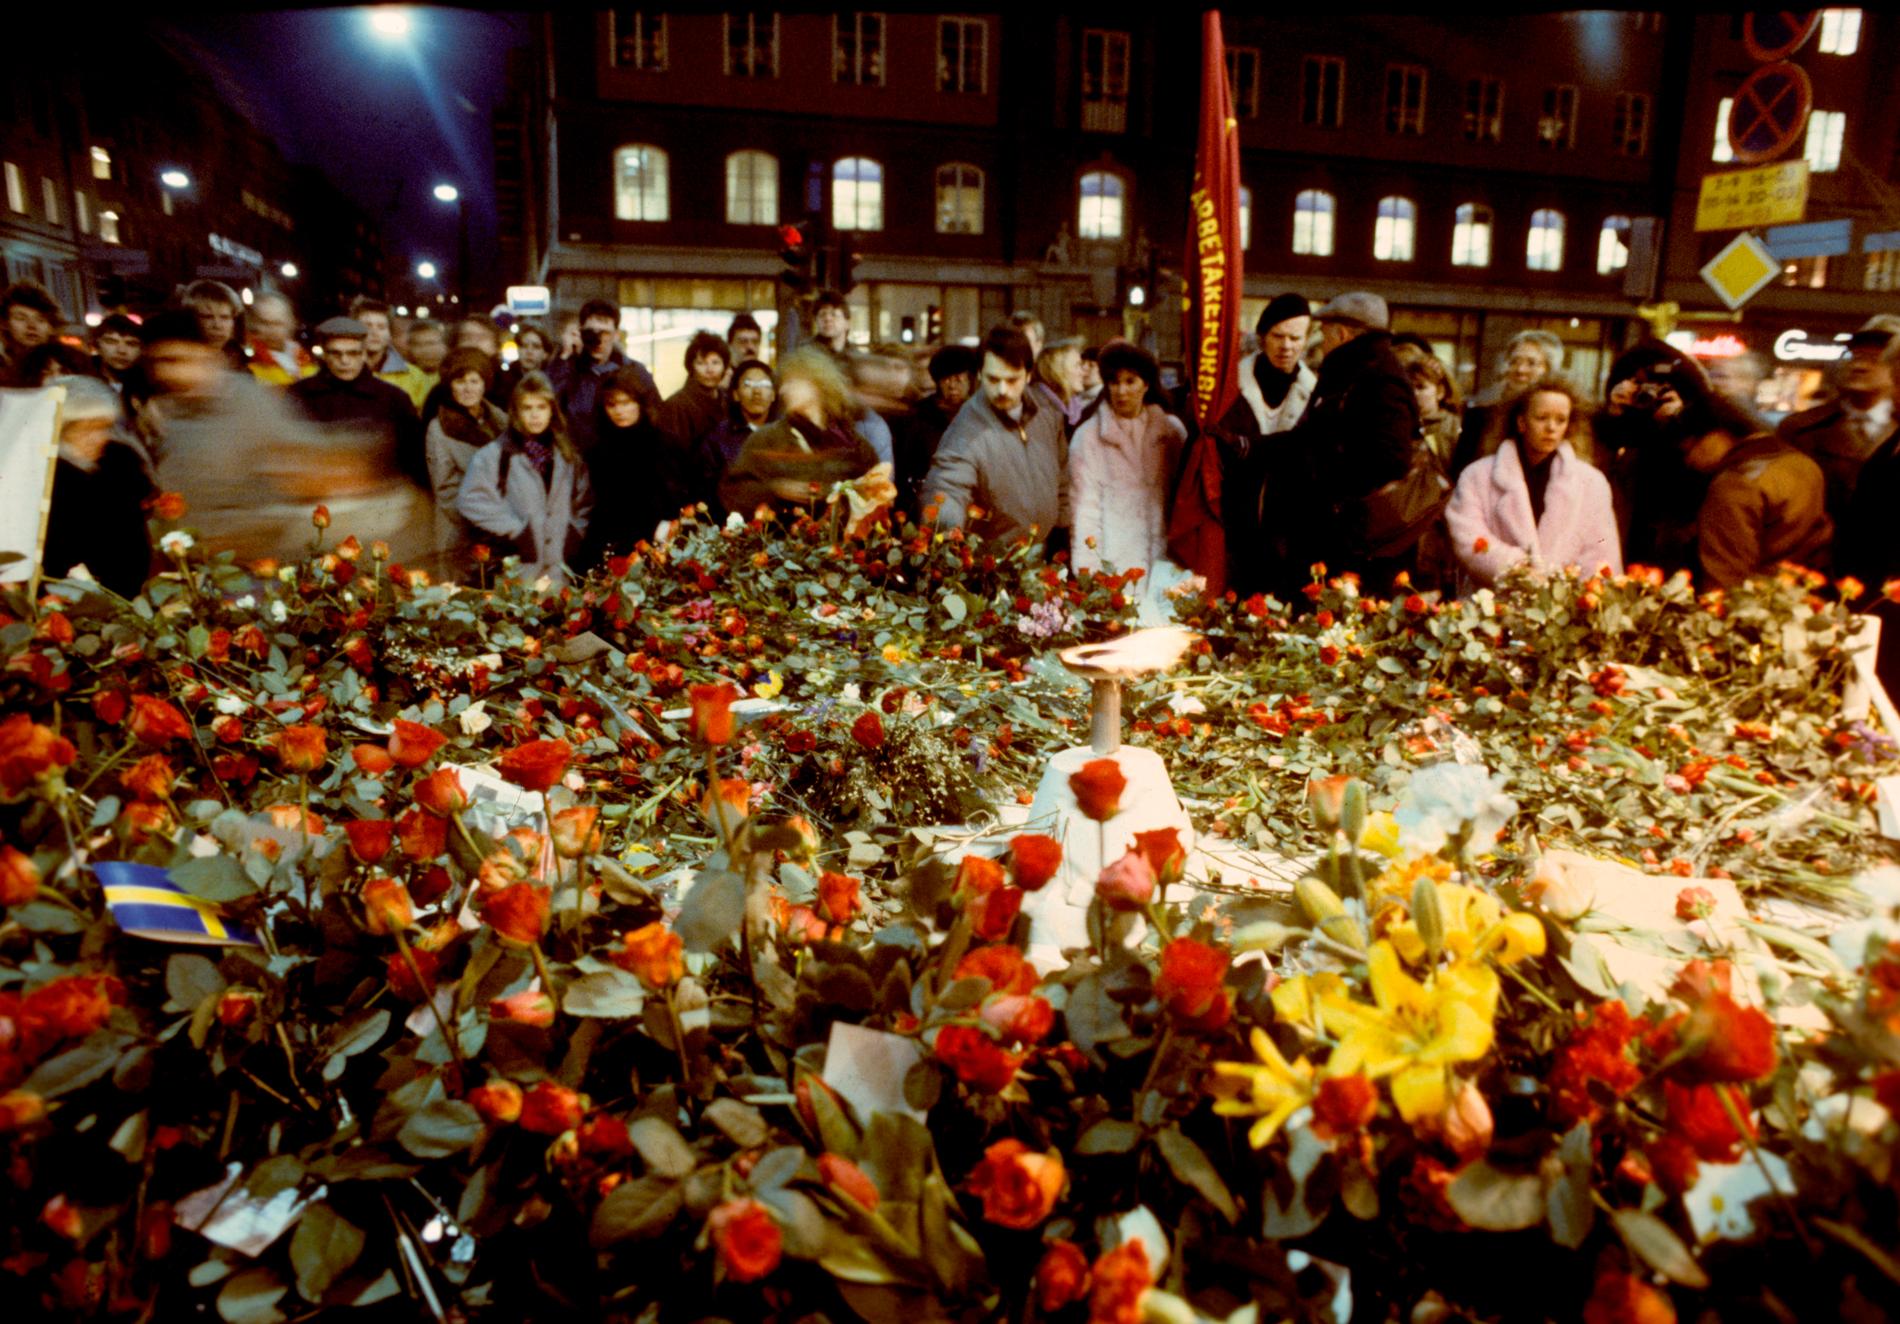 Sörjande människor lägger blommor på mordplatsen vid hörnet av Sveavägen och Tunnelgatan i Stockholm i mars 1986, för att hedra Sveriges statsminister Olof Palme som blev skjuten till döds på platsen. Arkivbild.